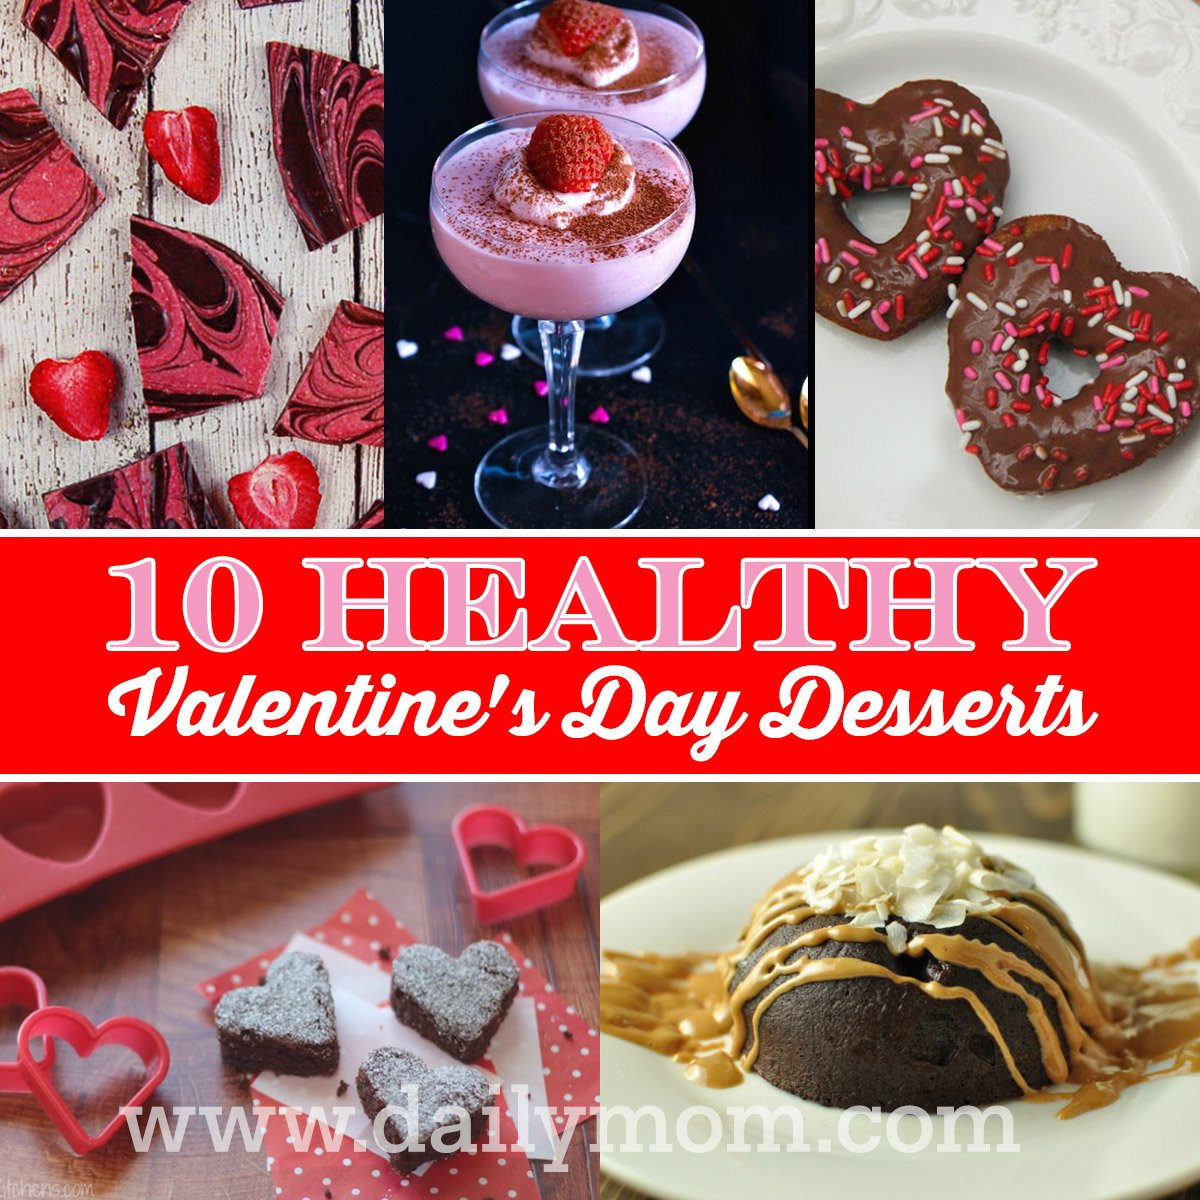 Healthy Valentine Desserts
 10 Healthy Valentine s Day Desserts Daily Mom